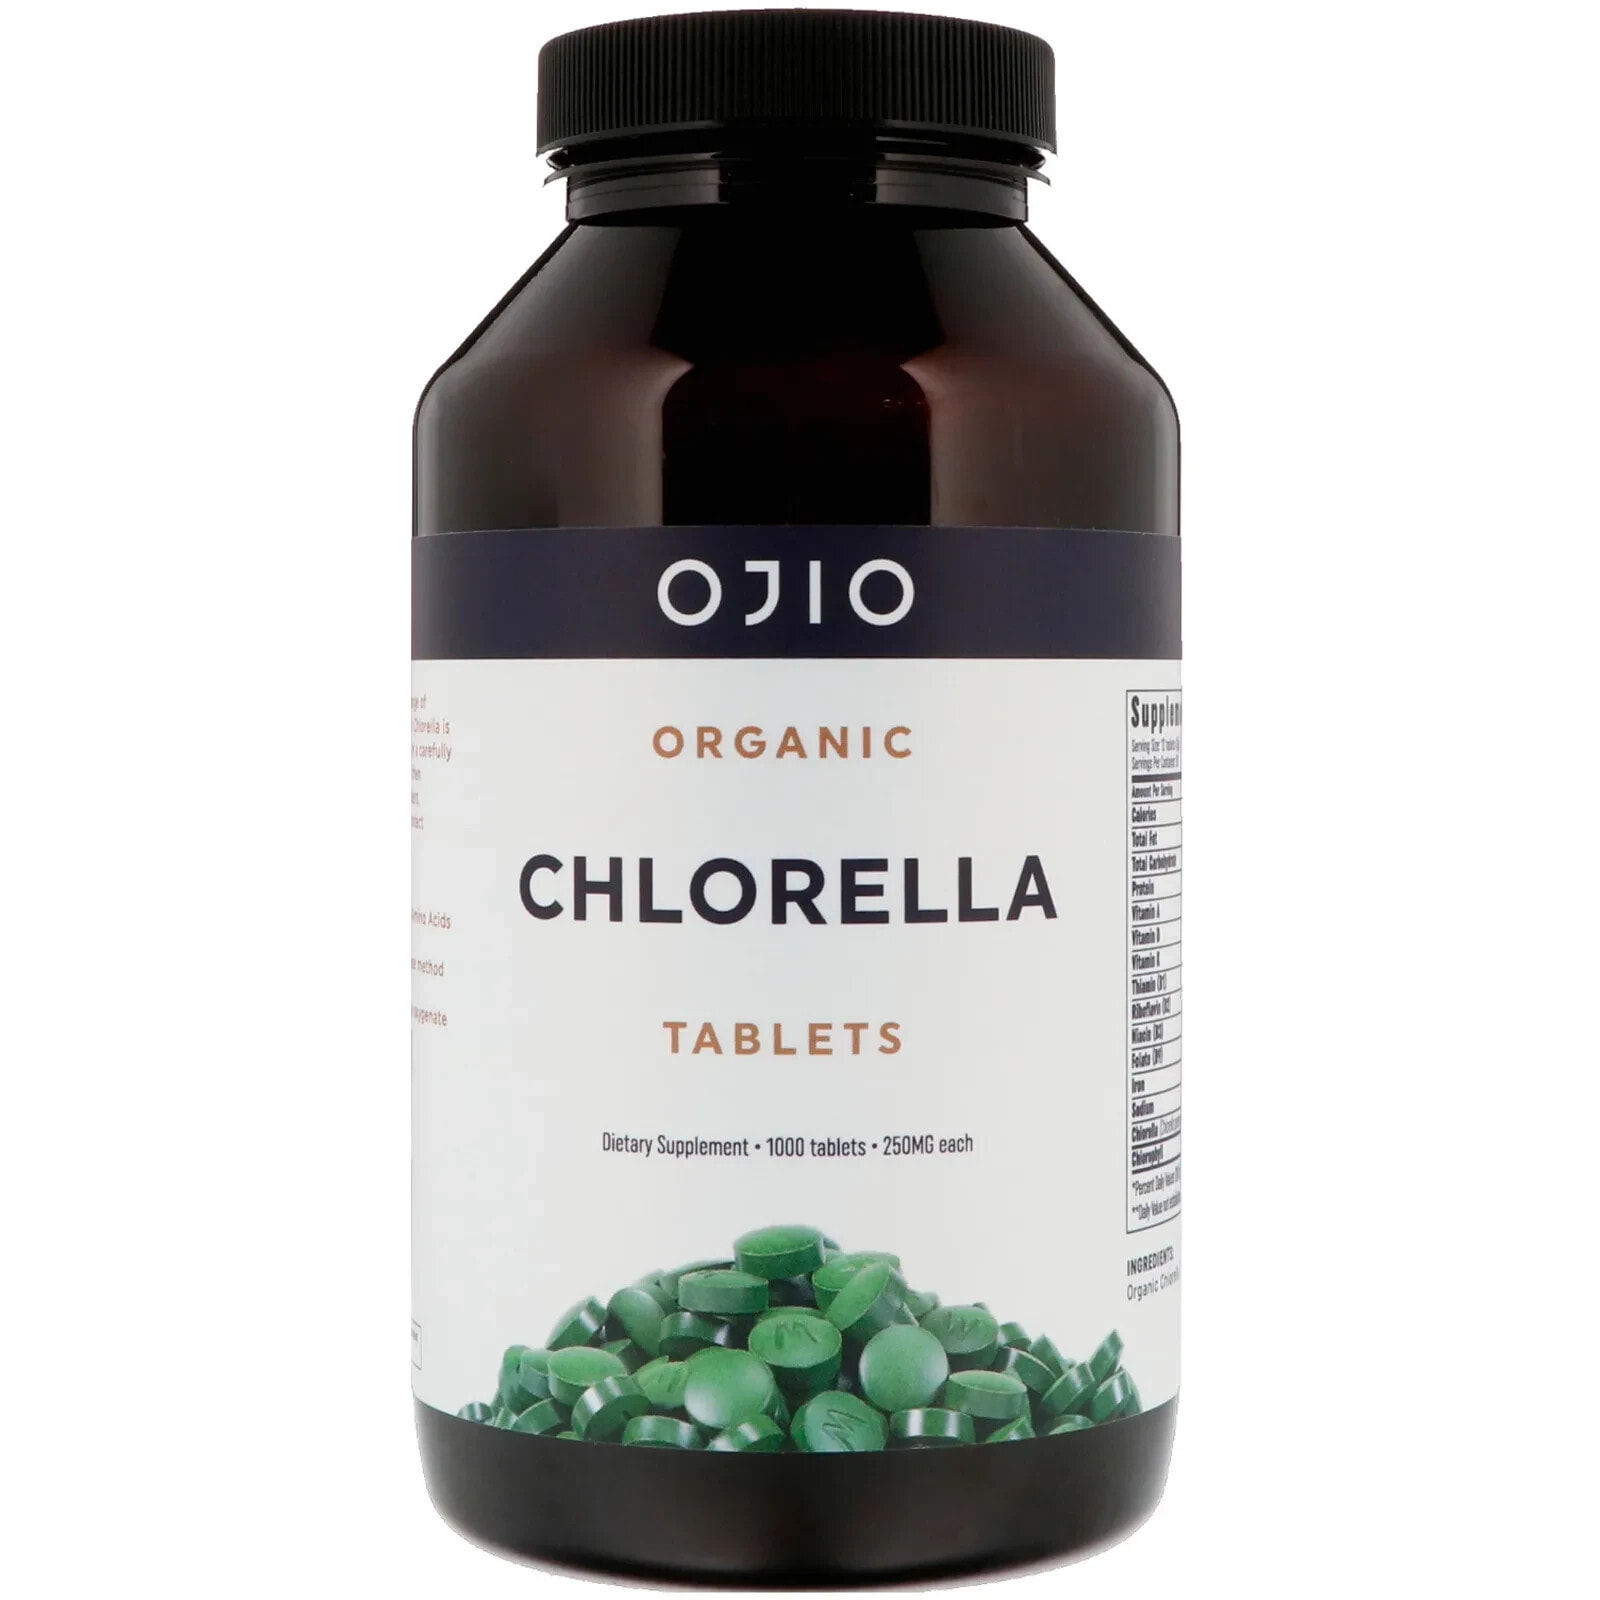 Охио, Органическая хлорелла в таблетках, 250 мг, 1000 таблеток